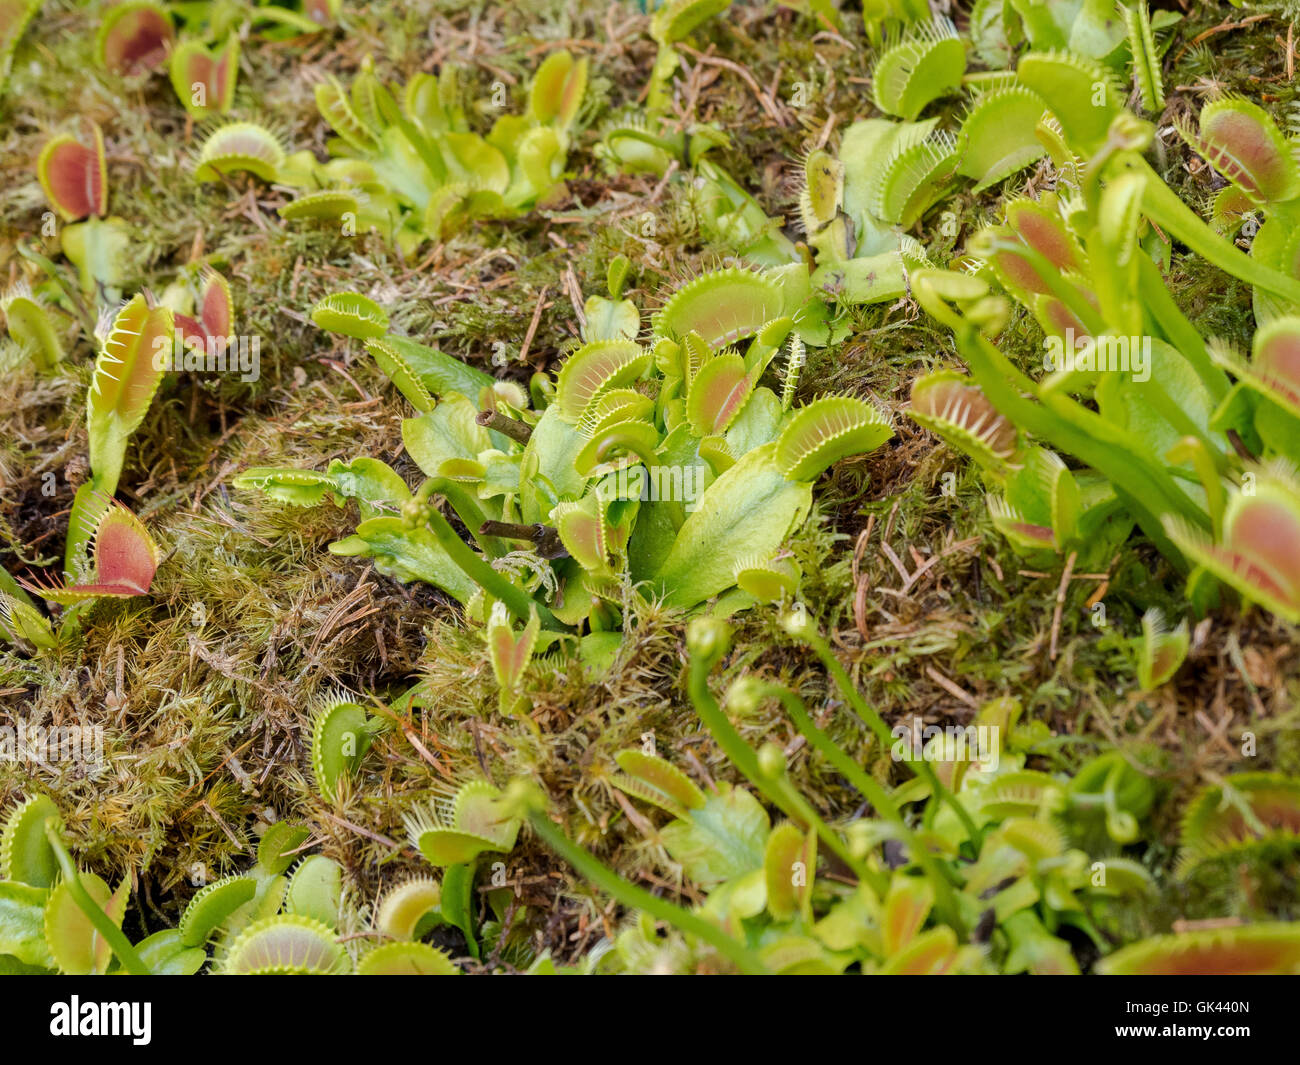 Dionaea muscipula, también conocida como Venus atrapamoscas, planta carnívora, surtido de colores verdes Foto de stock